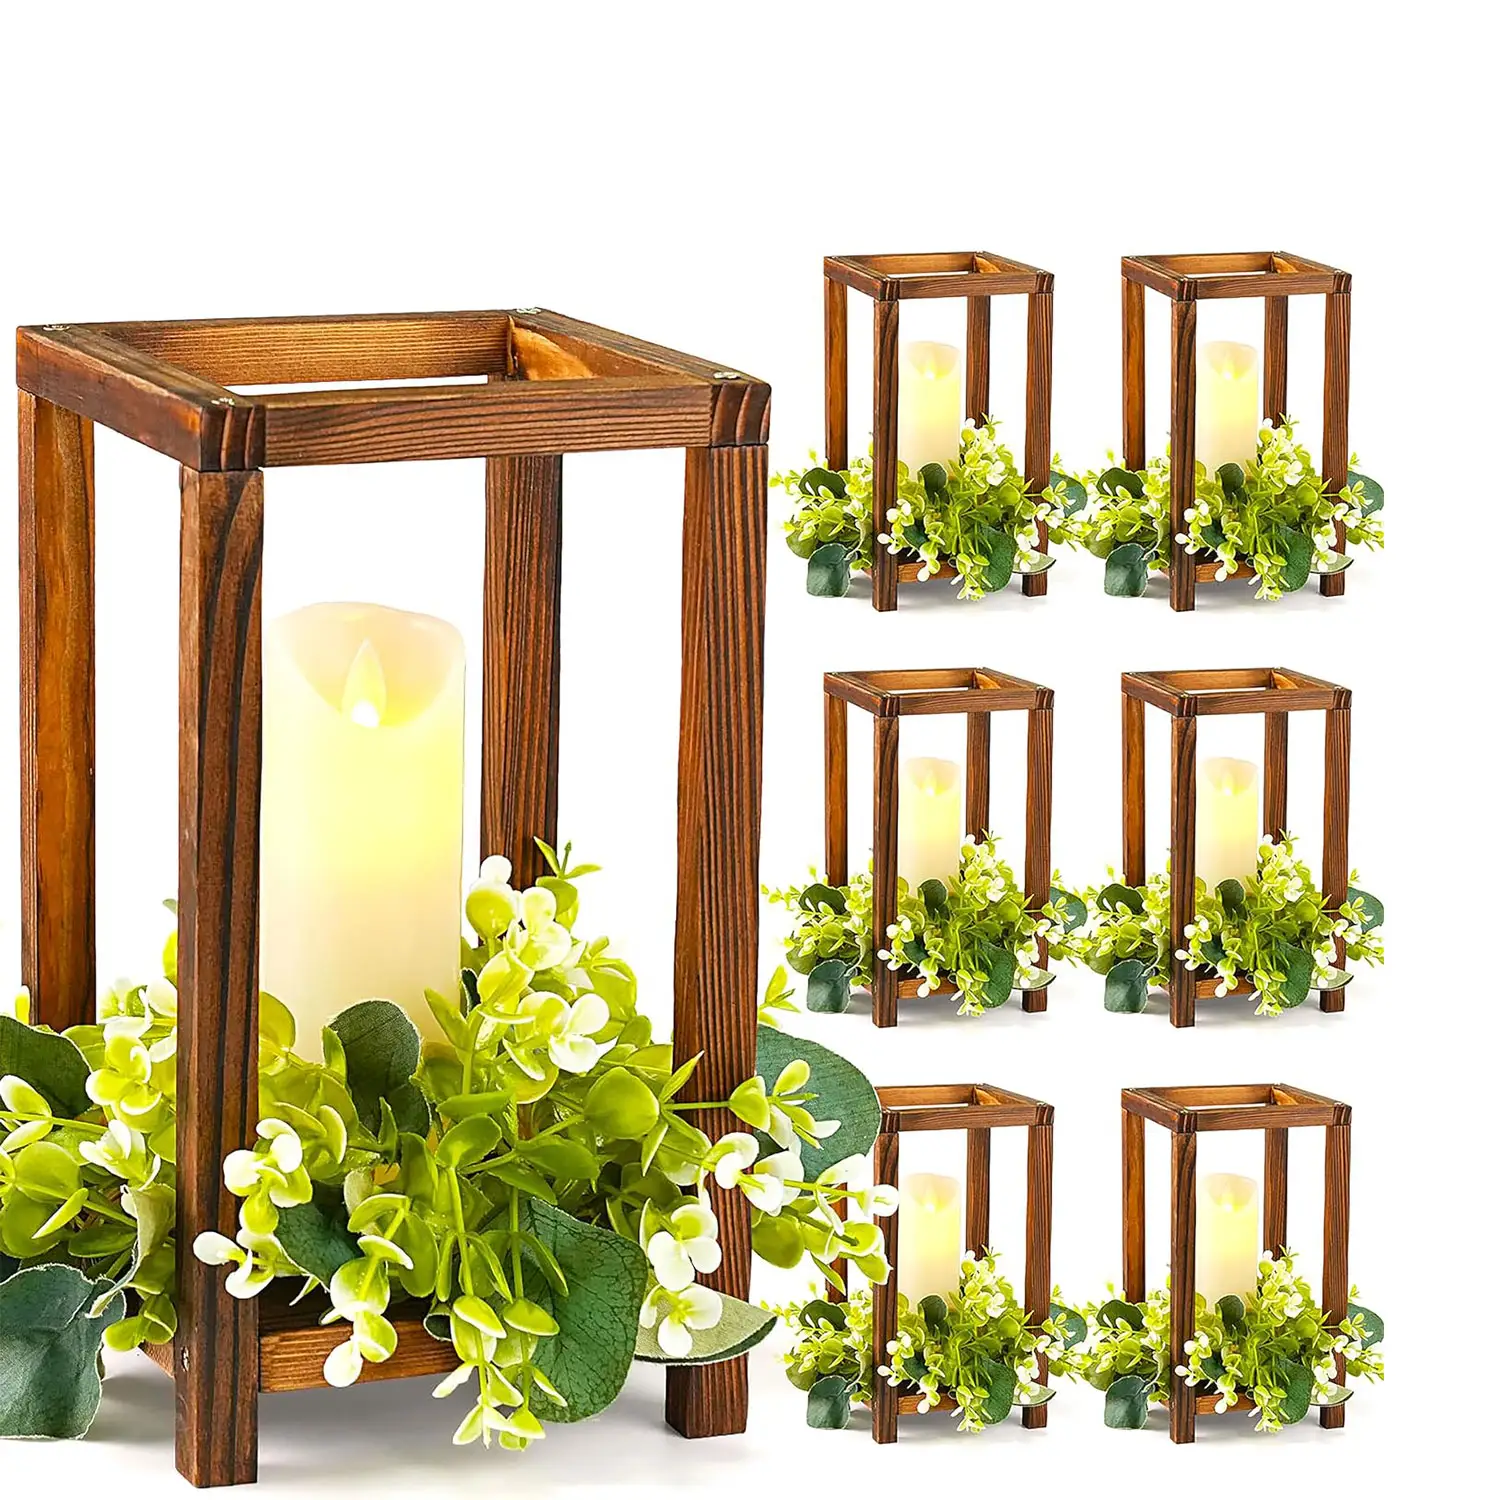 Holz-Hochzeitslaterne Mittelteil, Laternen-Kerzenhalter für rustikale Hochzeitstischdekoration, Holz-Kerzenlaterne für Weihnachten